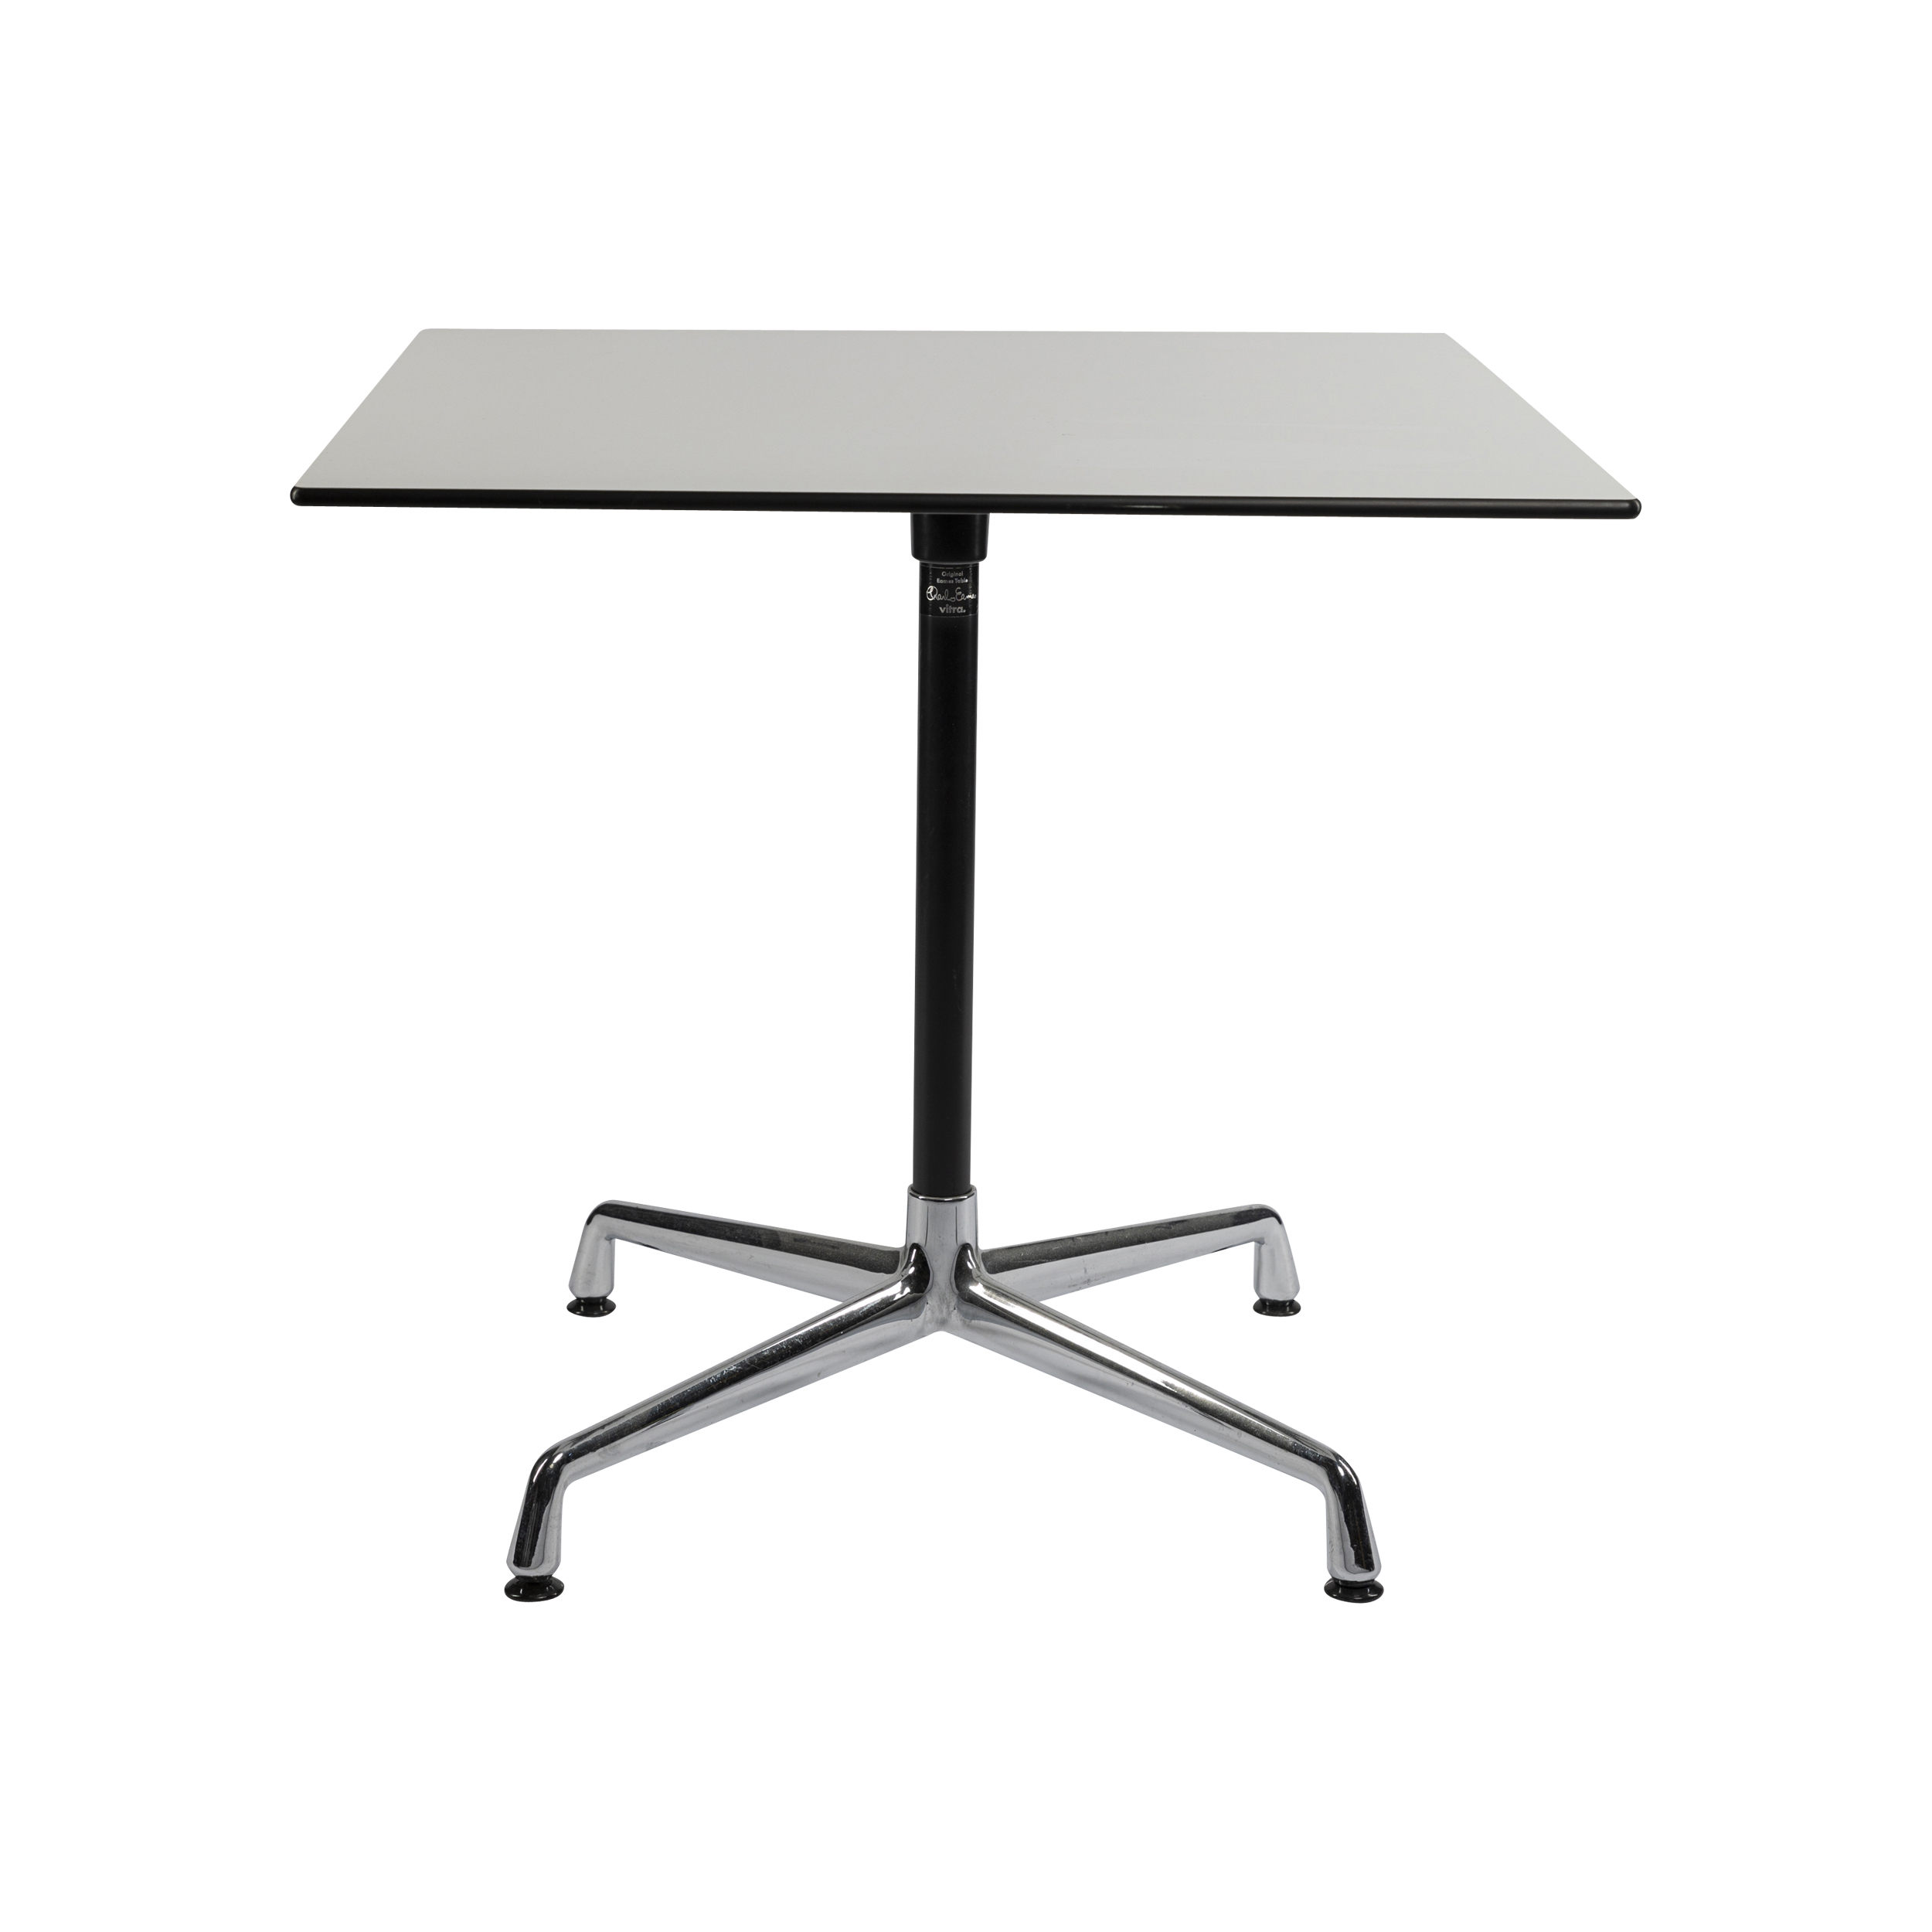 Botsing apotheker Picknicken Vitra Eames contract tafel vierkant 80x80cm wit met een chroom onderstel -  Fraaai Designmeubels